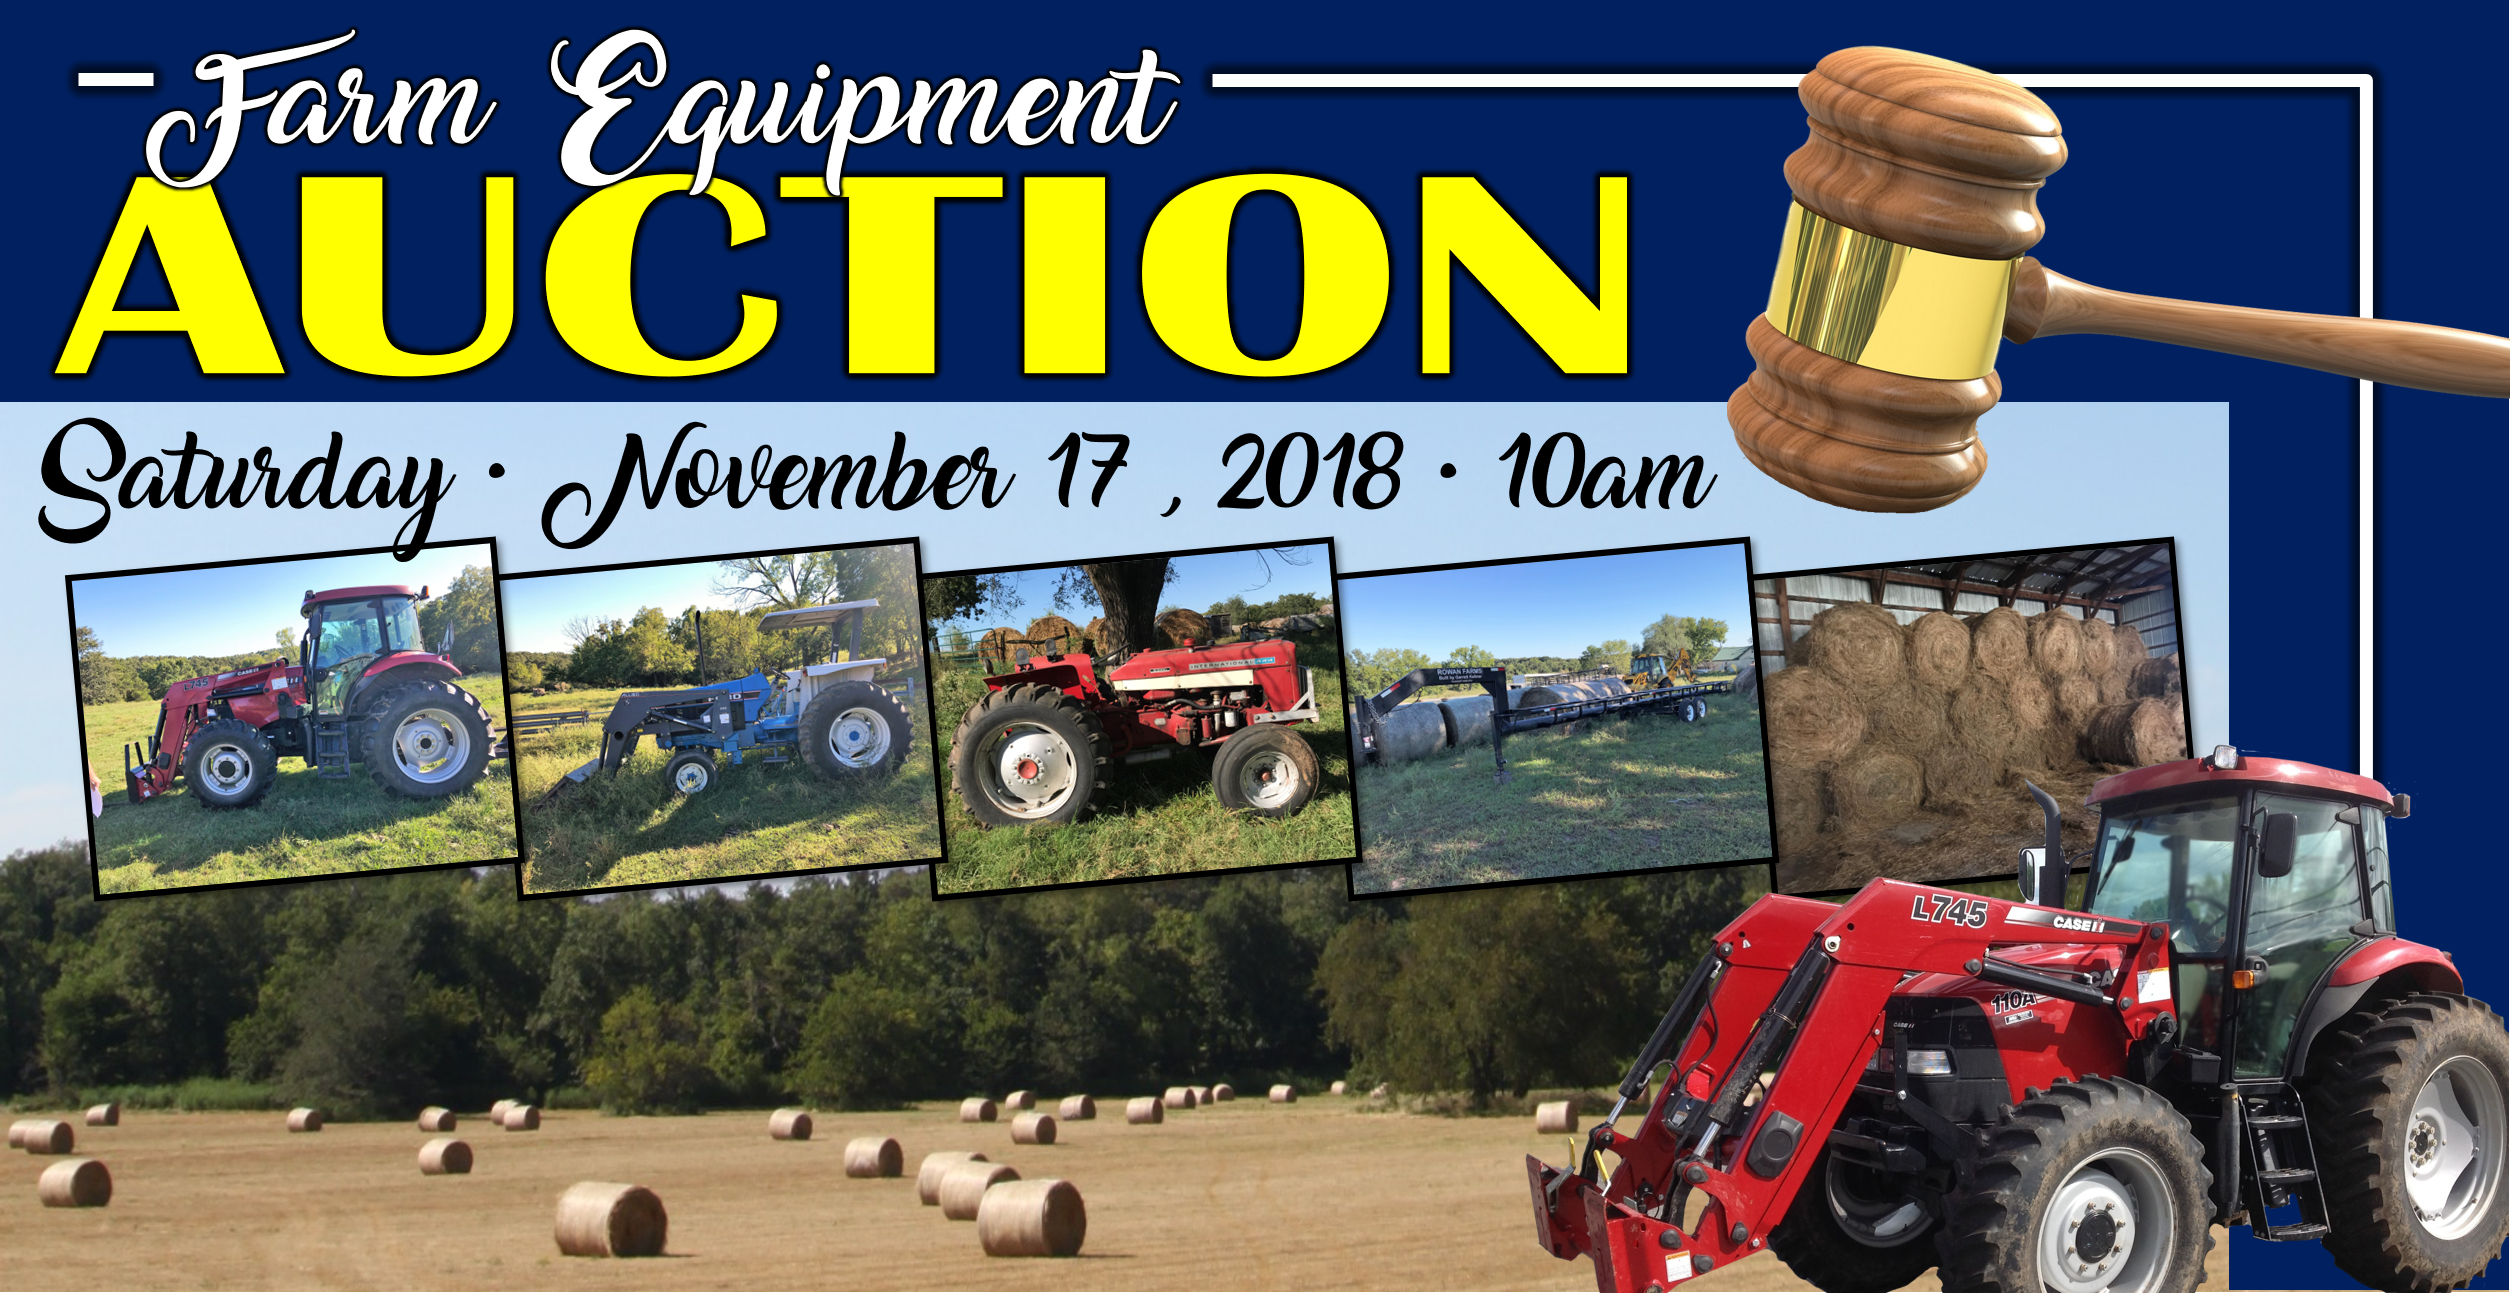 Rowan Estate Farm Equipment Auction